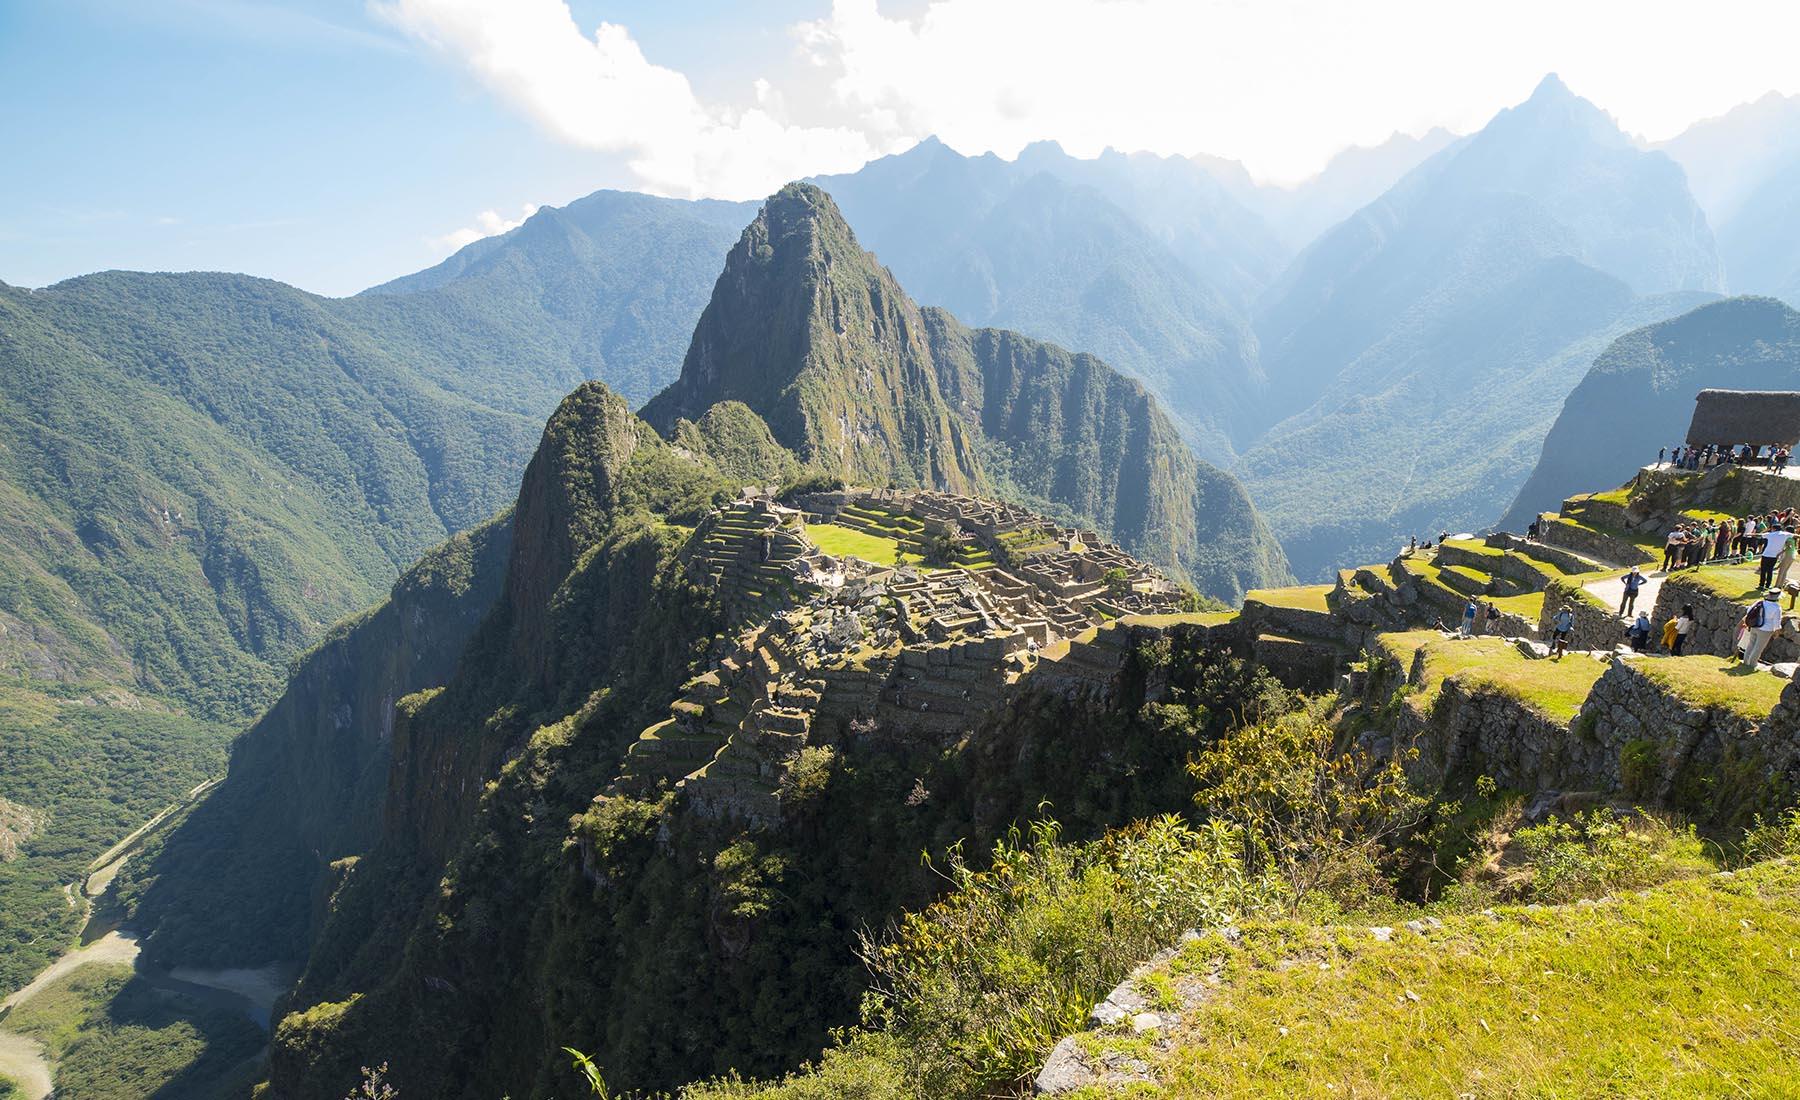 INCA TRAIL CHOQUEQUIRAO TO MACHU PICCHU: 8D 7N - Cusco Machu Picchu